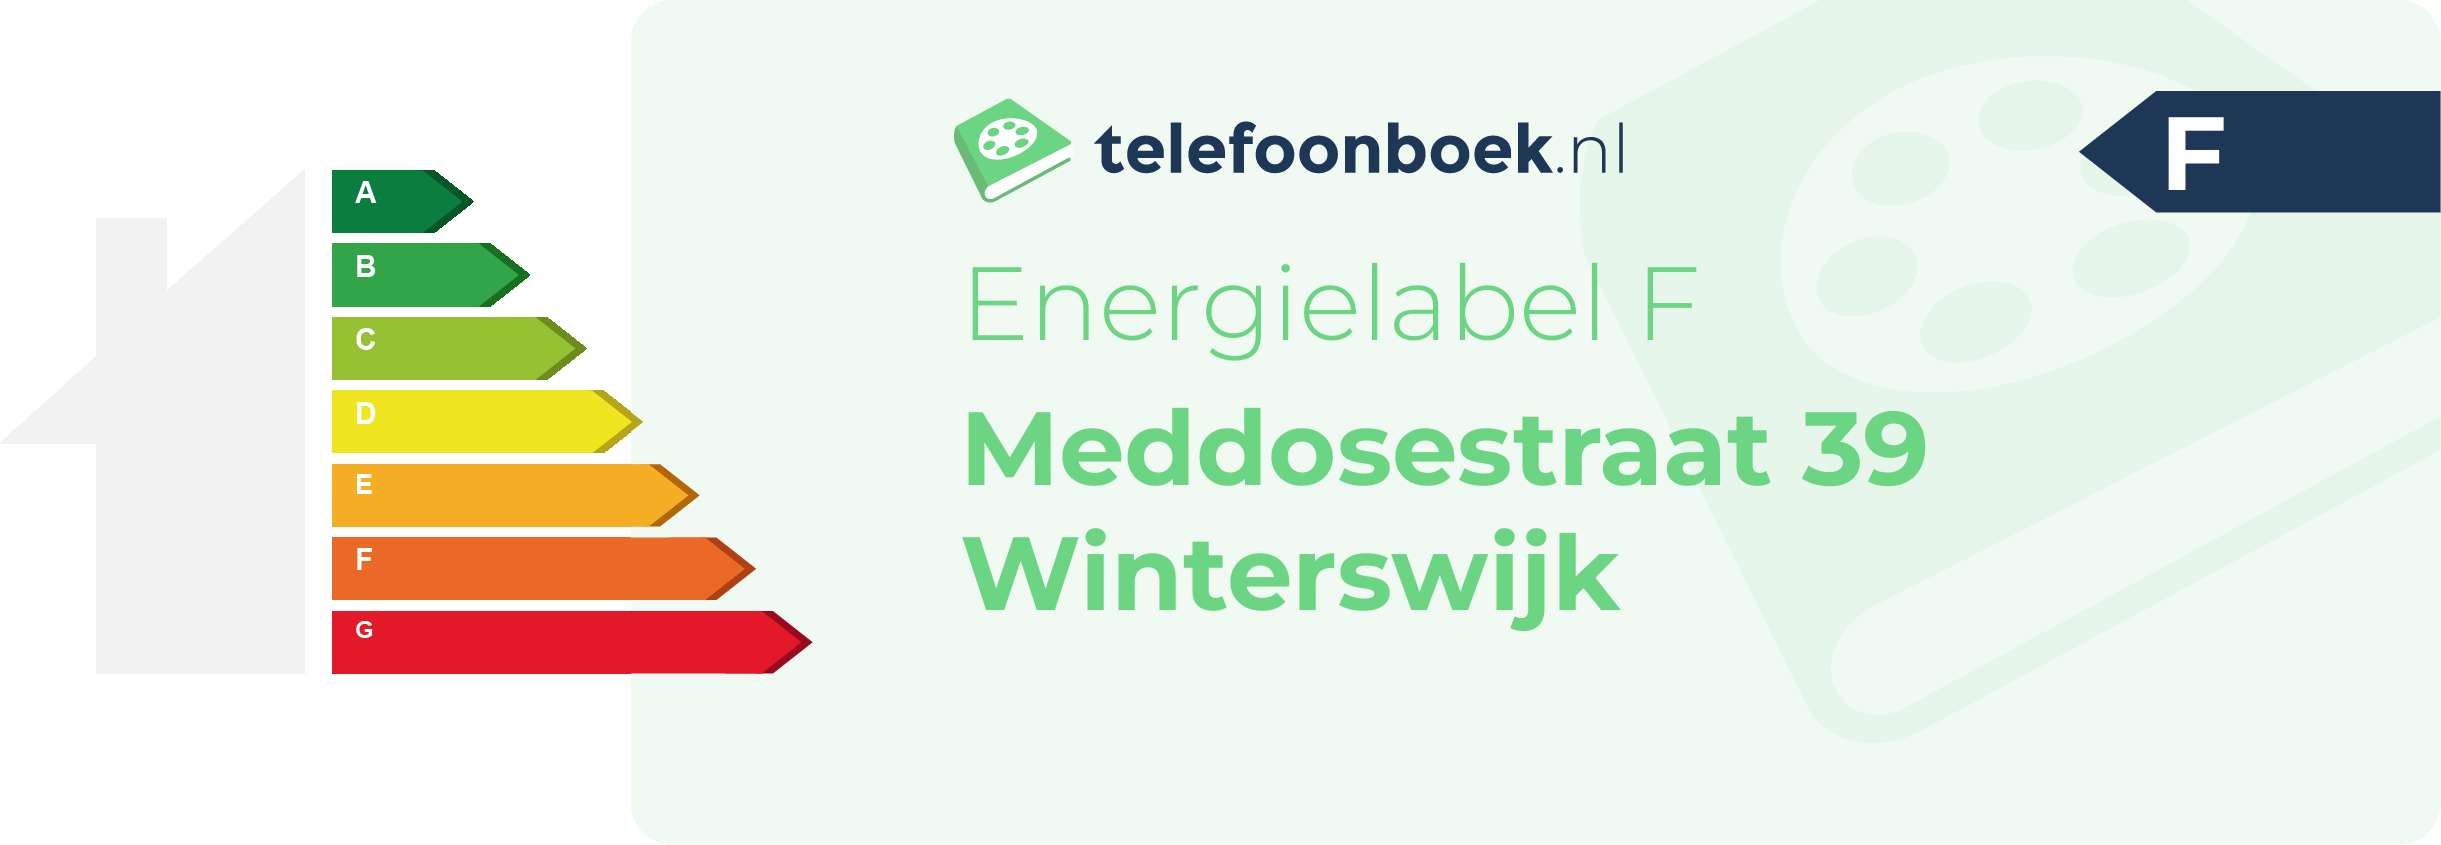 Energielabel Meddosestraat 39 Winterswijk